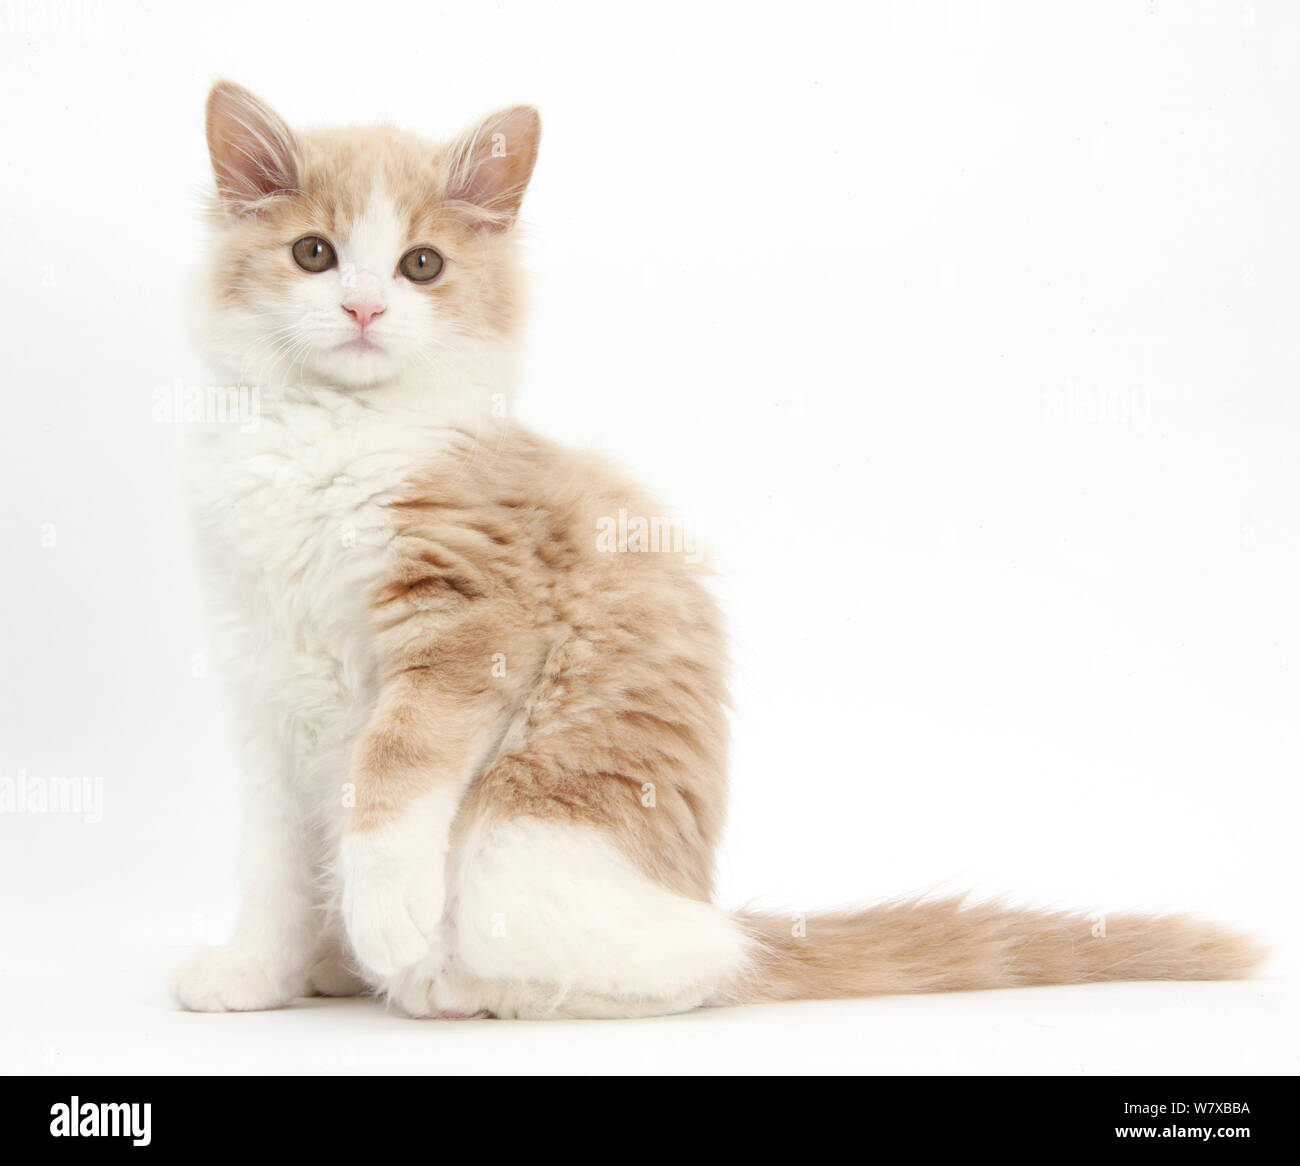 Le gingembre et blanc chaton sibérien, l'âge de 16 semaines, assis avec une patte relevée. Banque D'Images